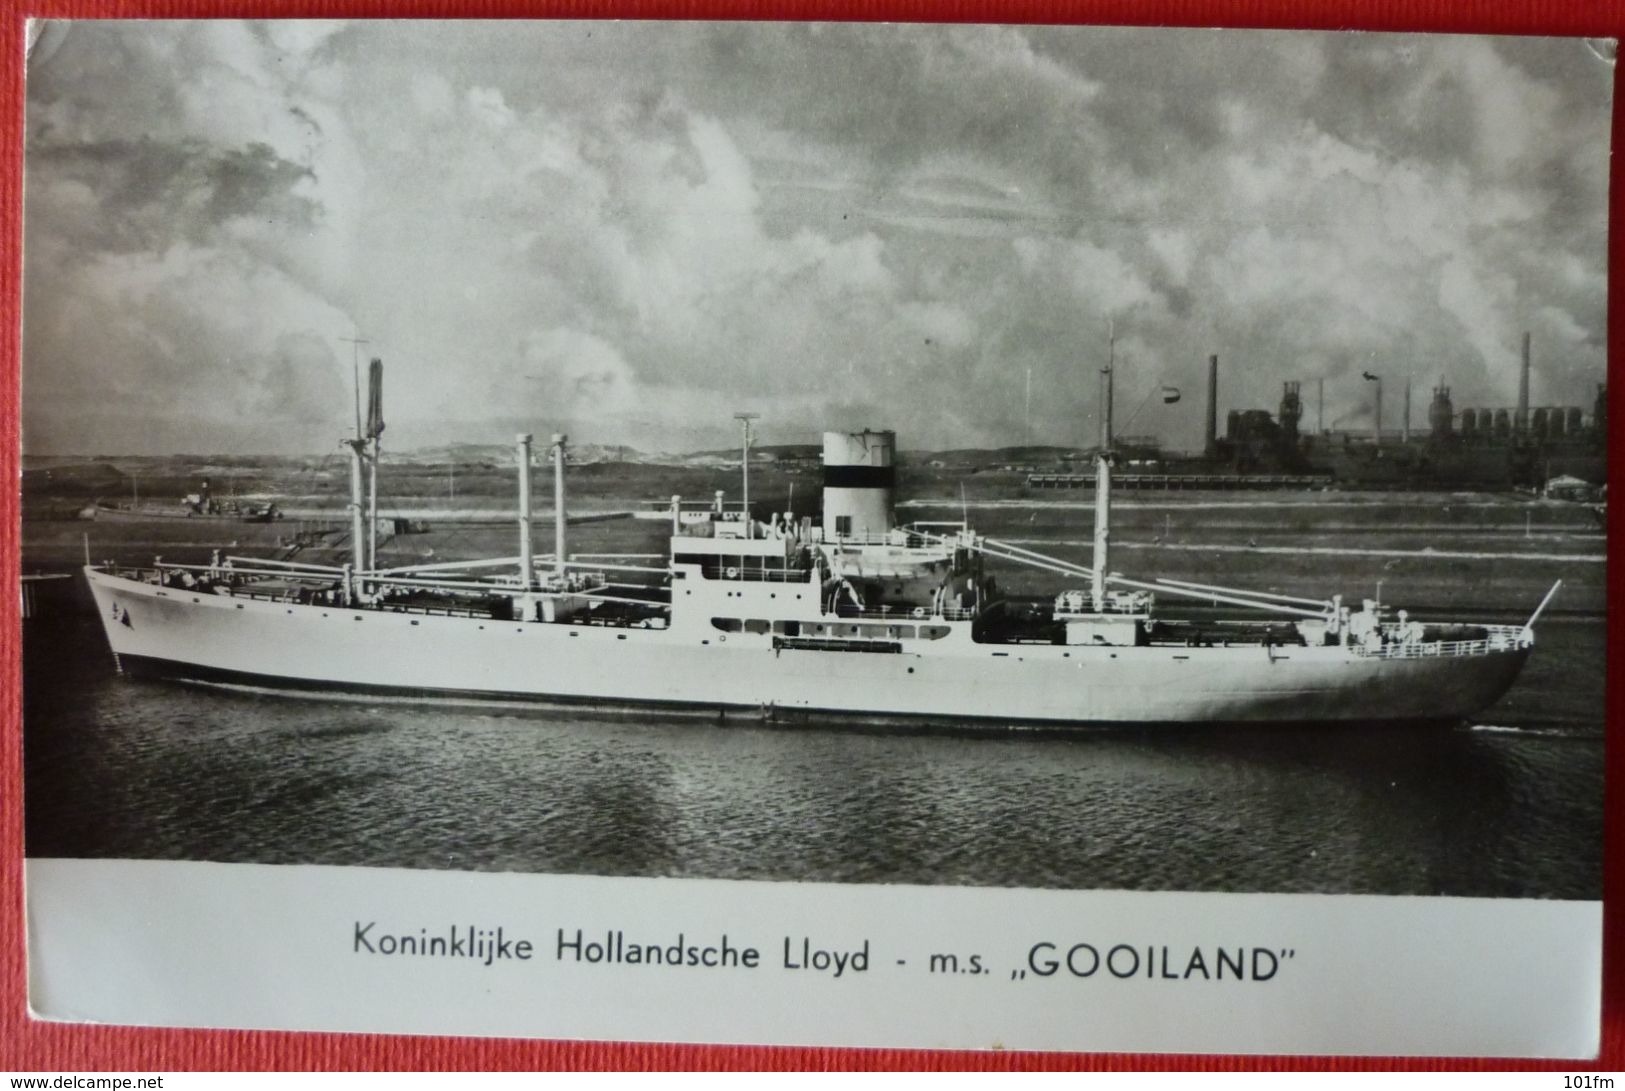 M.V. GOOILAND - KONINKLIJKE HOLLANDSCHE LLOYD - Dampfer